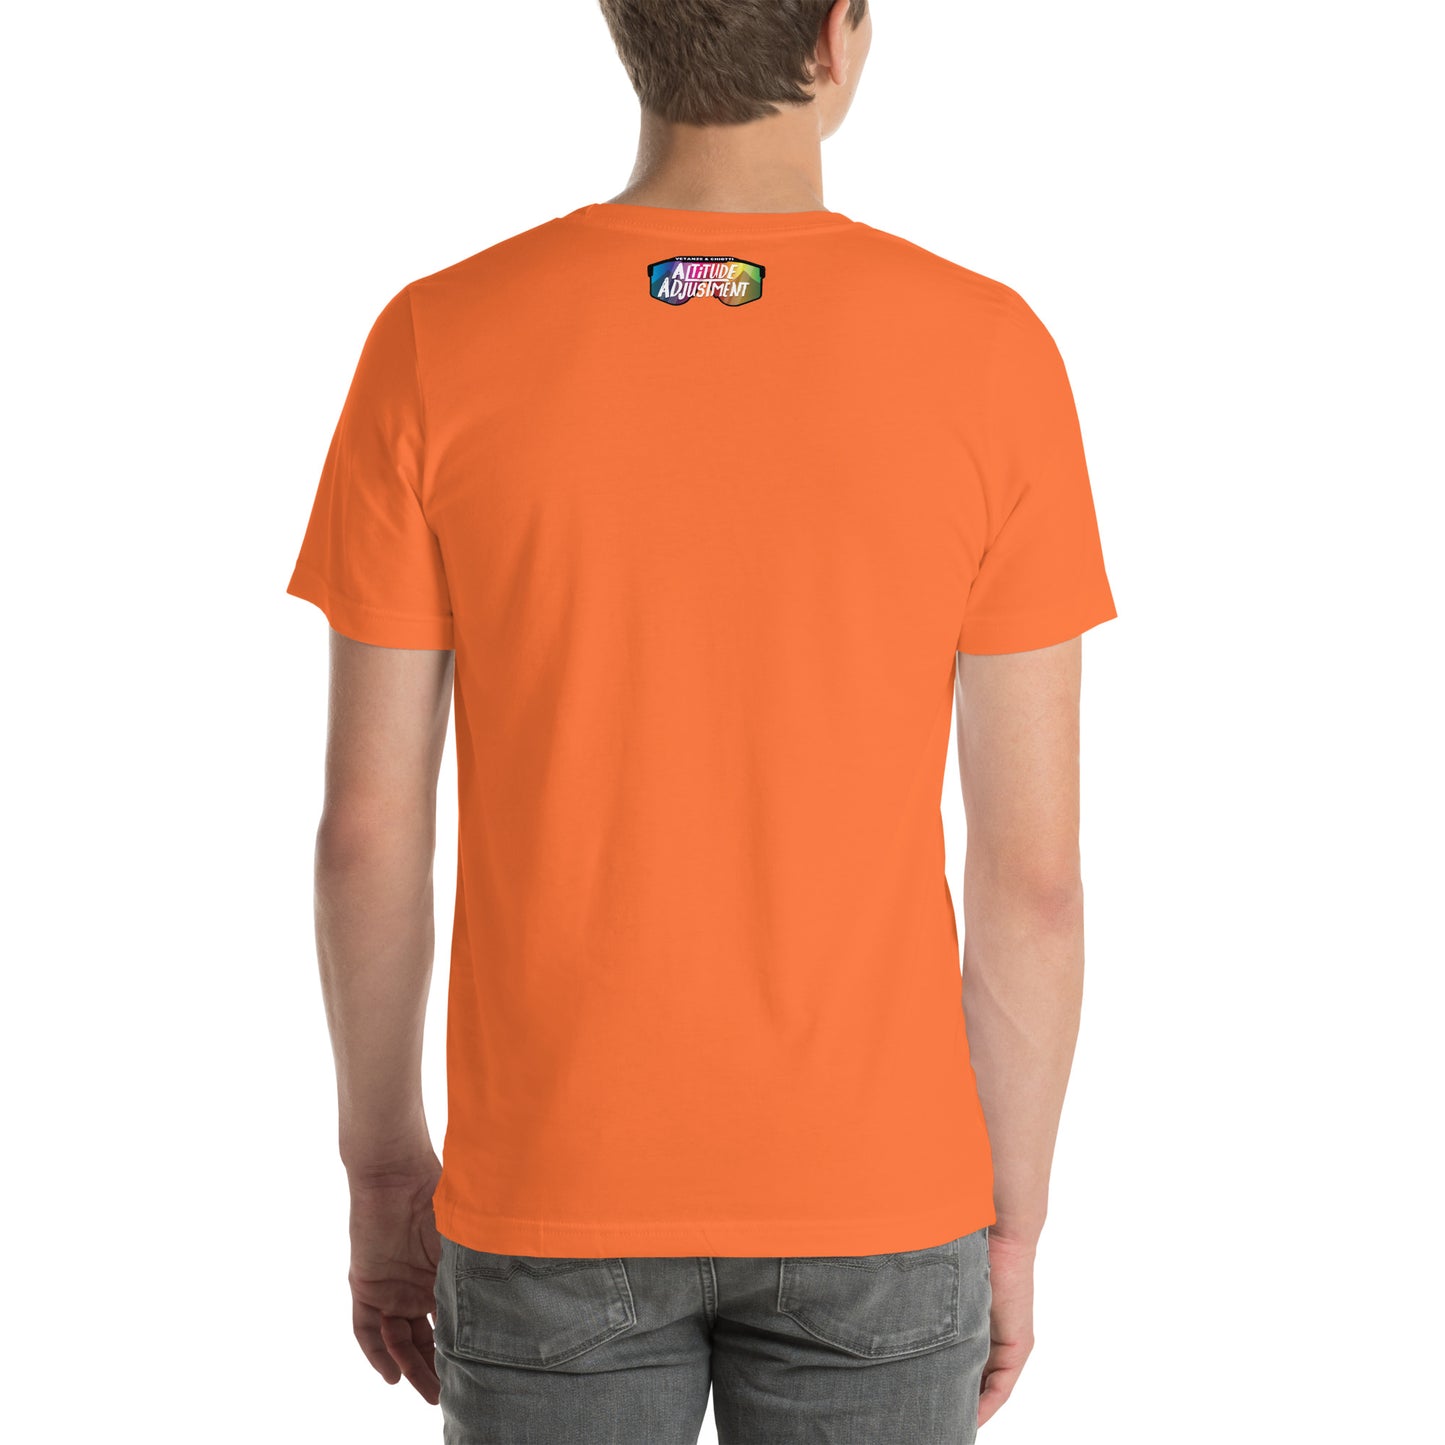 "I BO-LIEVE" Unisex t-shirt